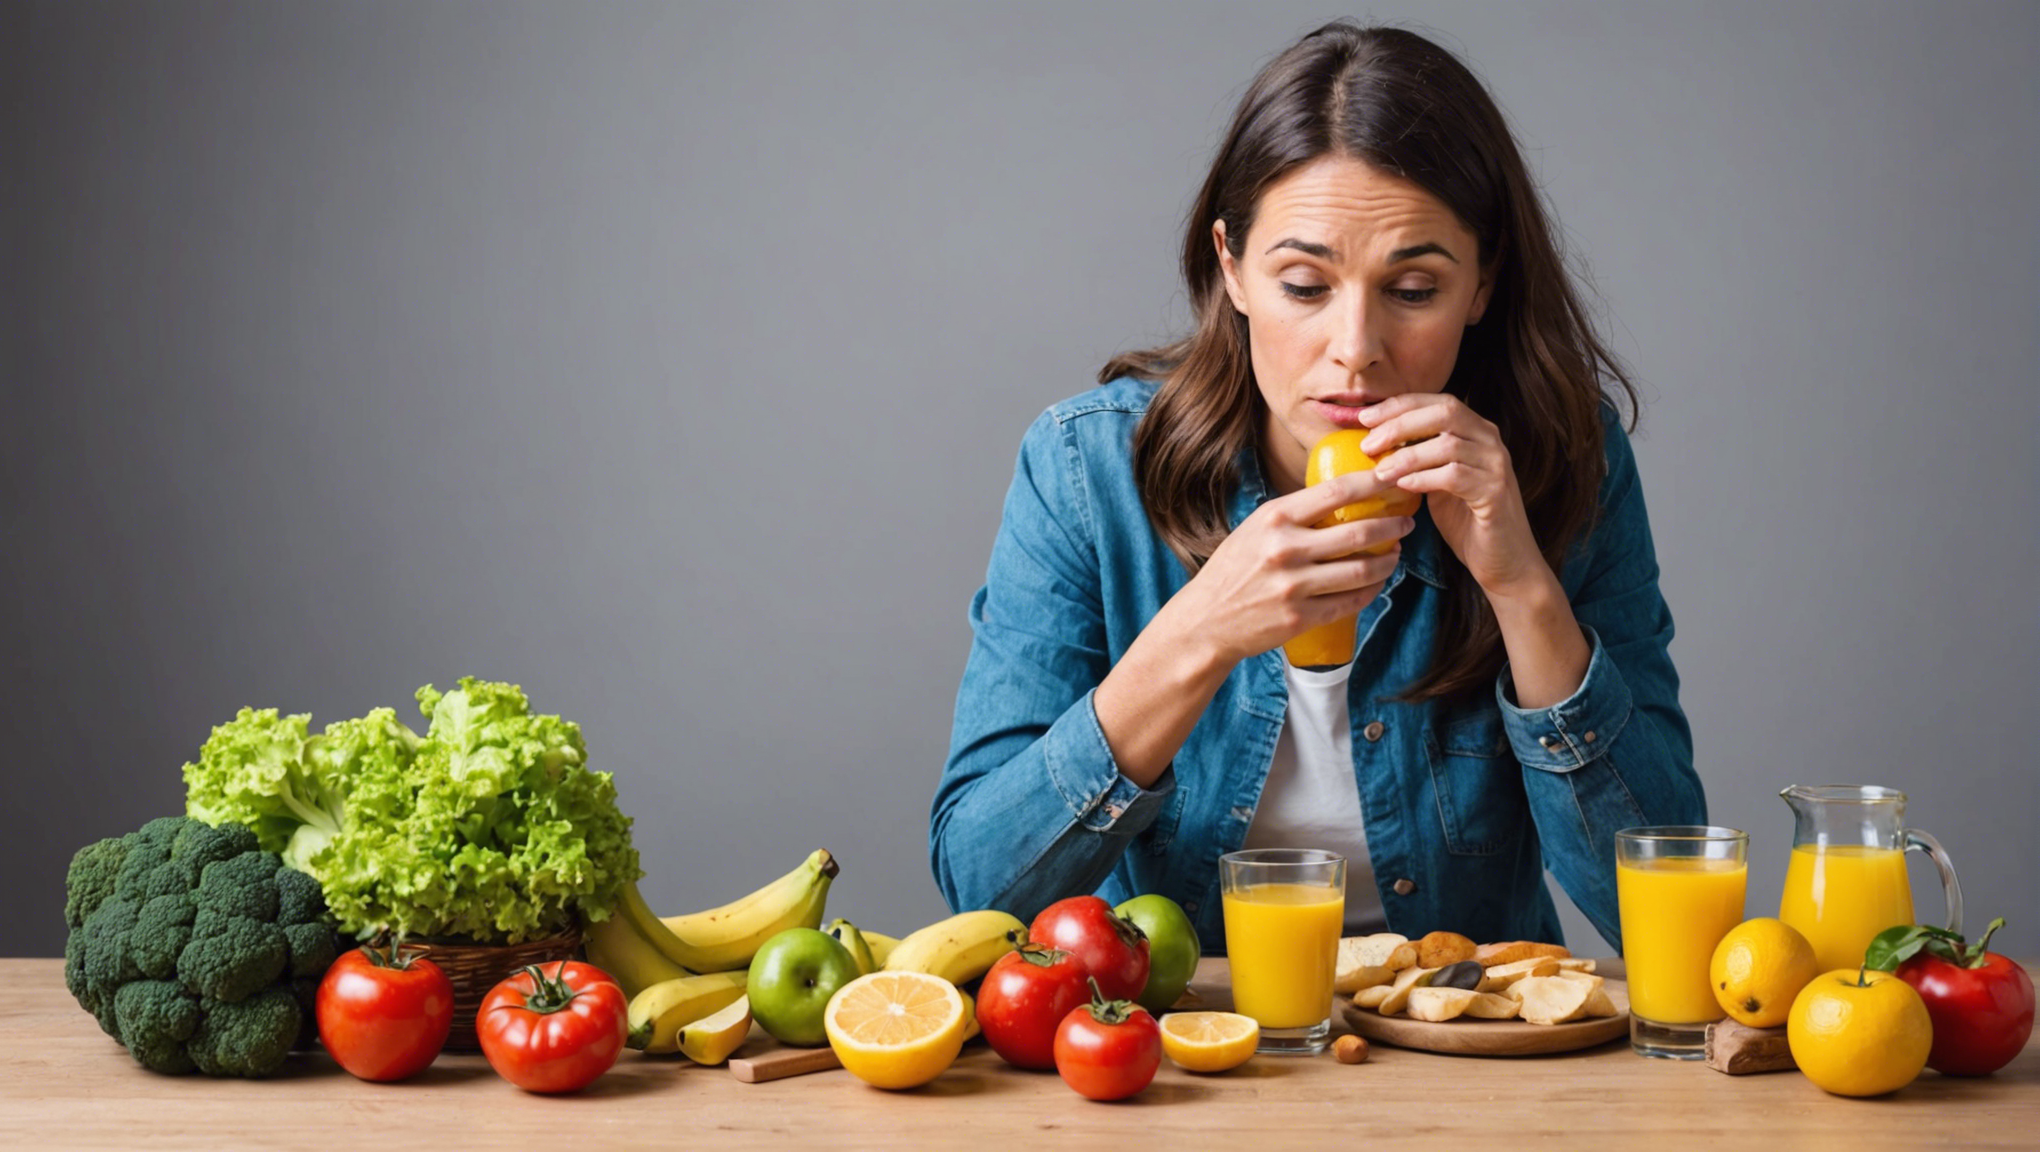 découvrez comment contrôler et réduire l'acide urique dans votre alimentation avec nos conseils et astuces pour une vie plus saine.